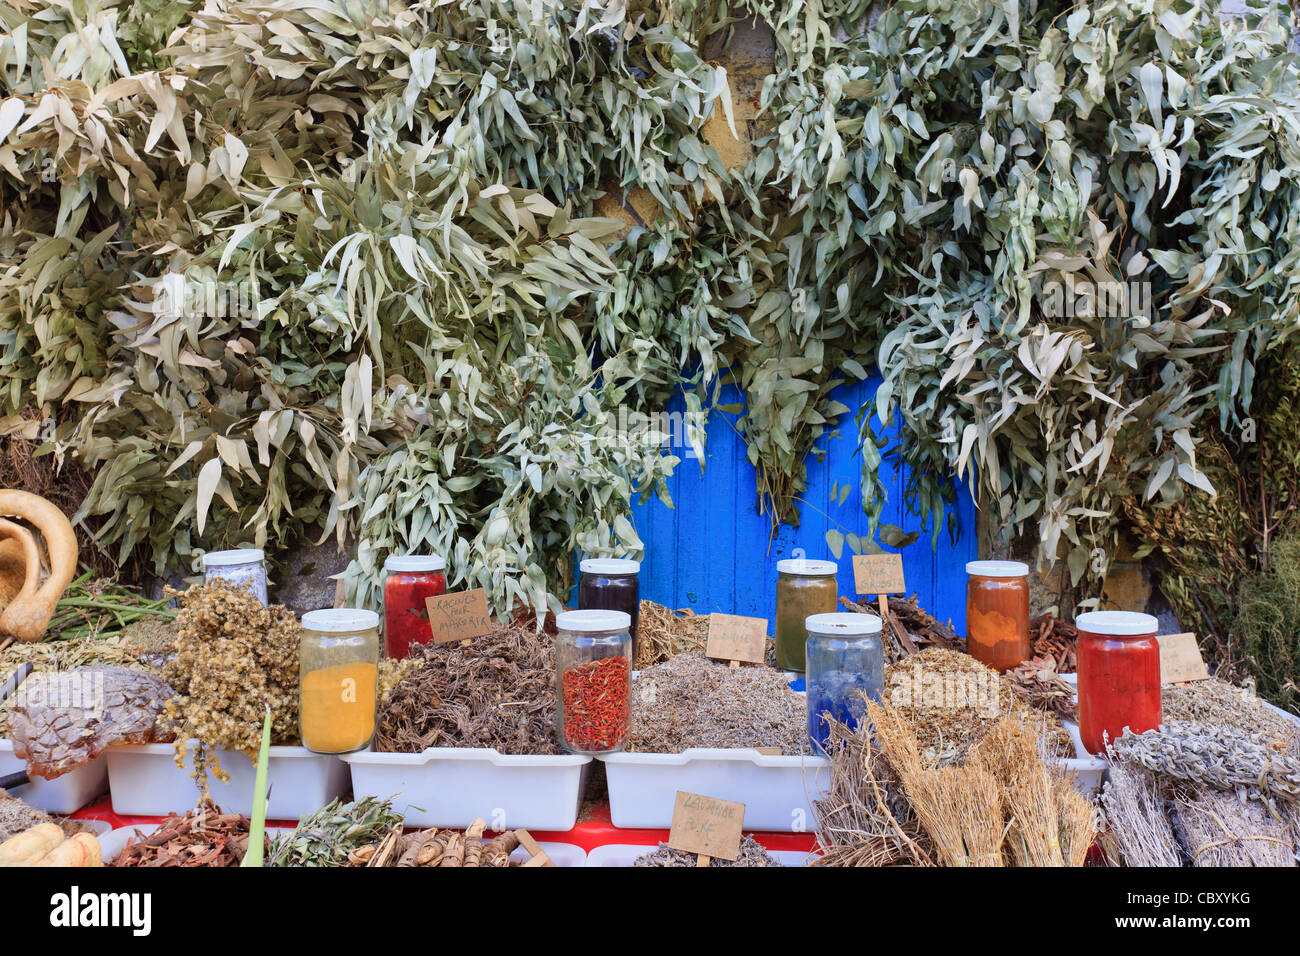 Marché aux herbes à Essaouira, Maroc, Afrique du Nord Banque D'Images